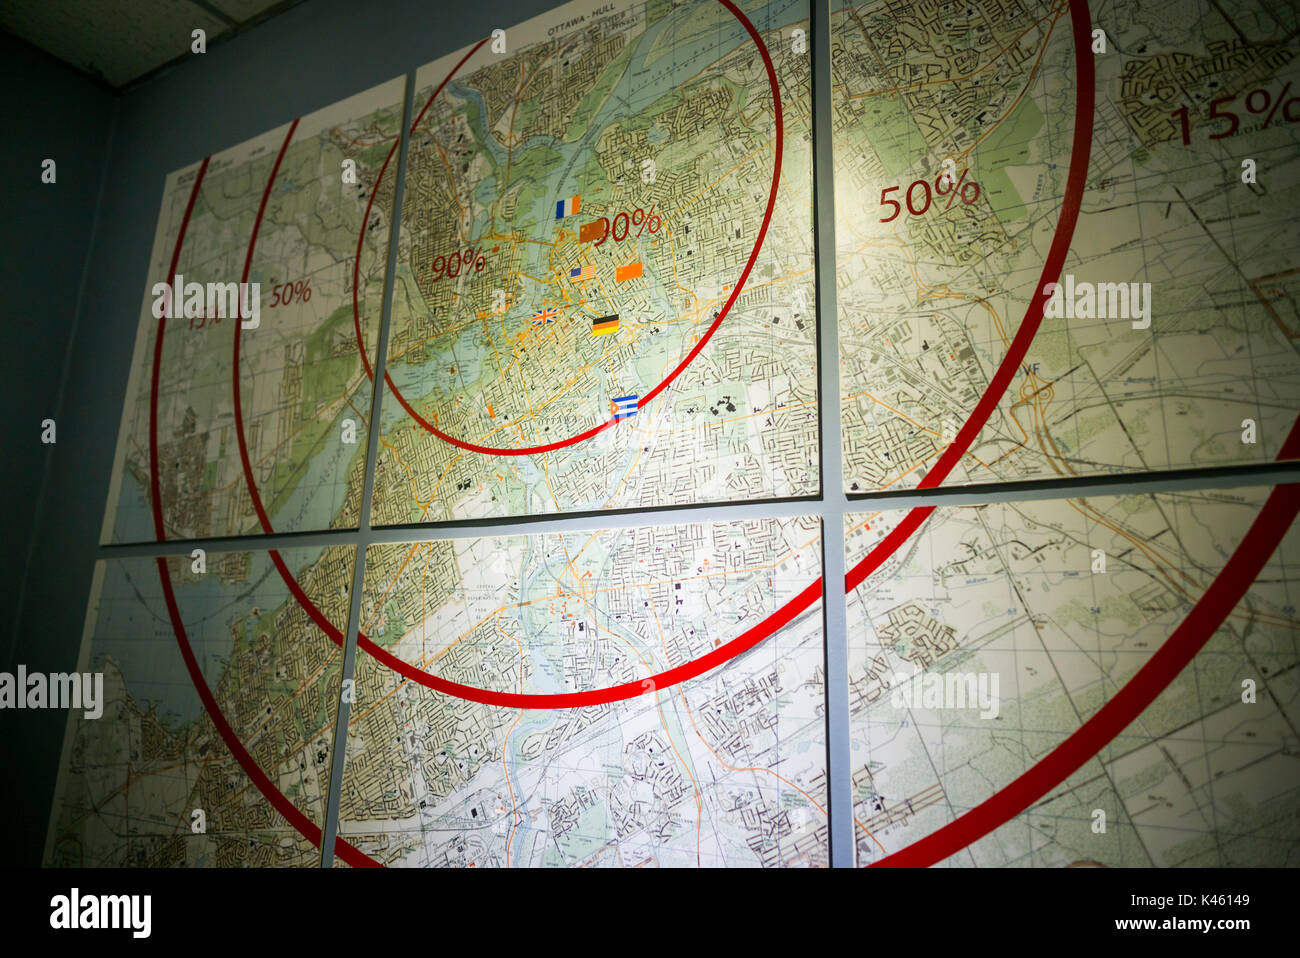 Kanada, Ontario, Karpfen, die diefenbunker, Kanadische Museum zum Kalten Krieg in unterirdische Bunker, Karte mit Nuclear Blast Zerstörung des Ottawa Bereich Stockfoto